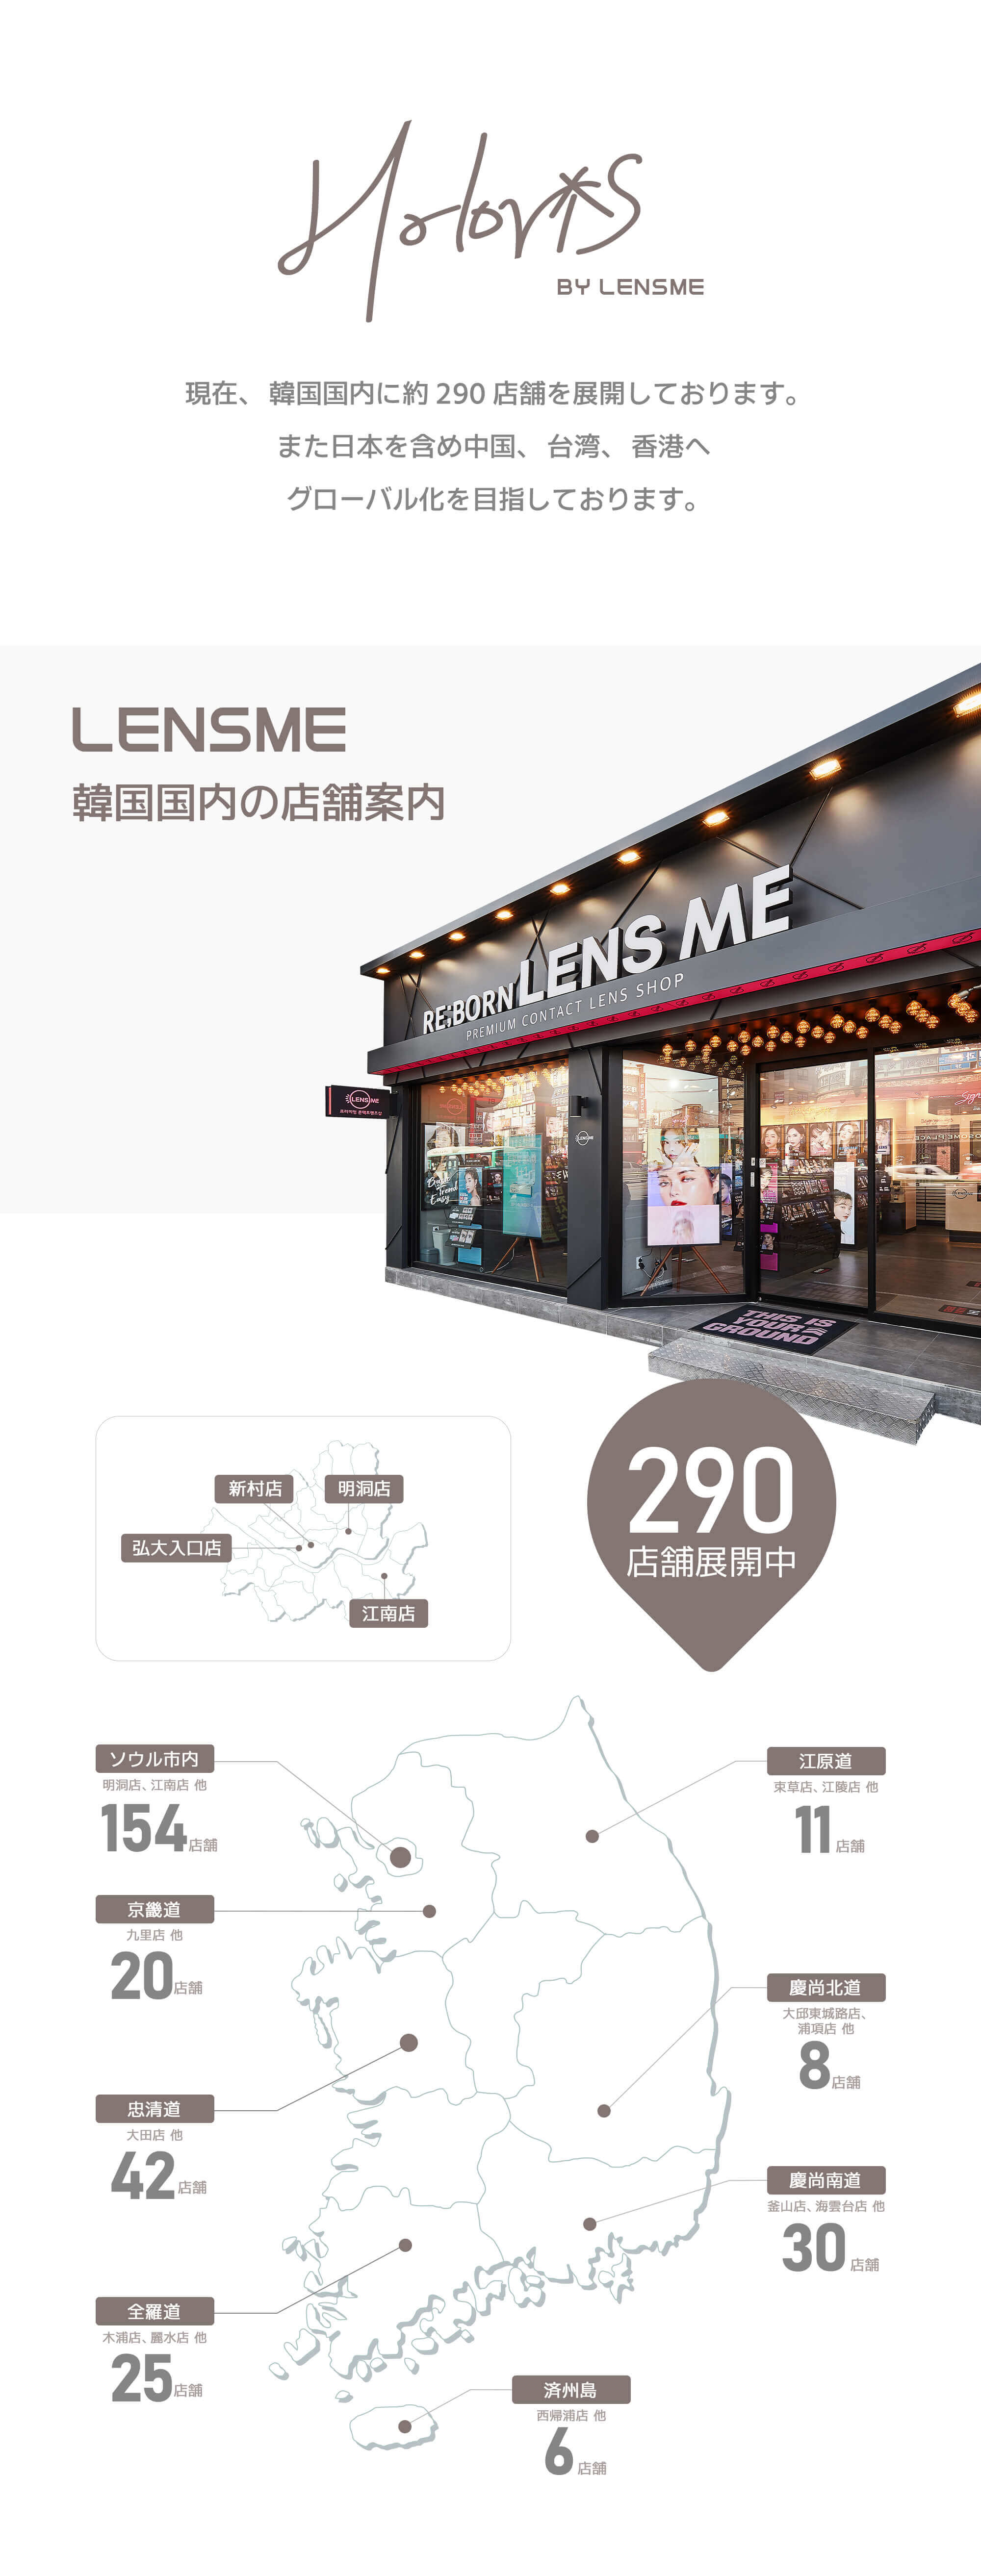 JINJIN(ジンジン)イメージモデルの韓国カラコン「HOLORIS BY LENSME(ホロリス by レンズミー)」は韓国で290店舗も展開される人気ブランド